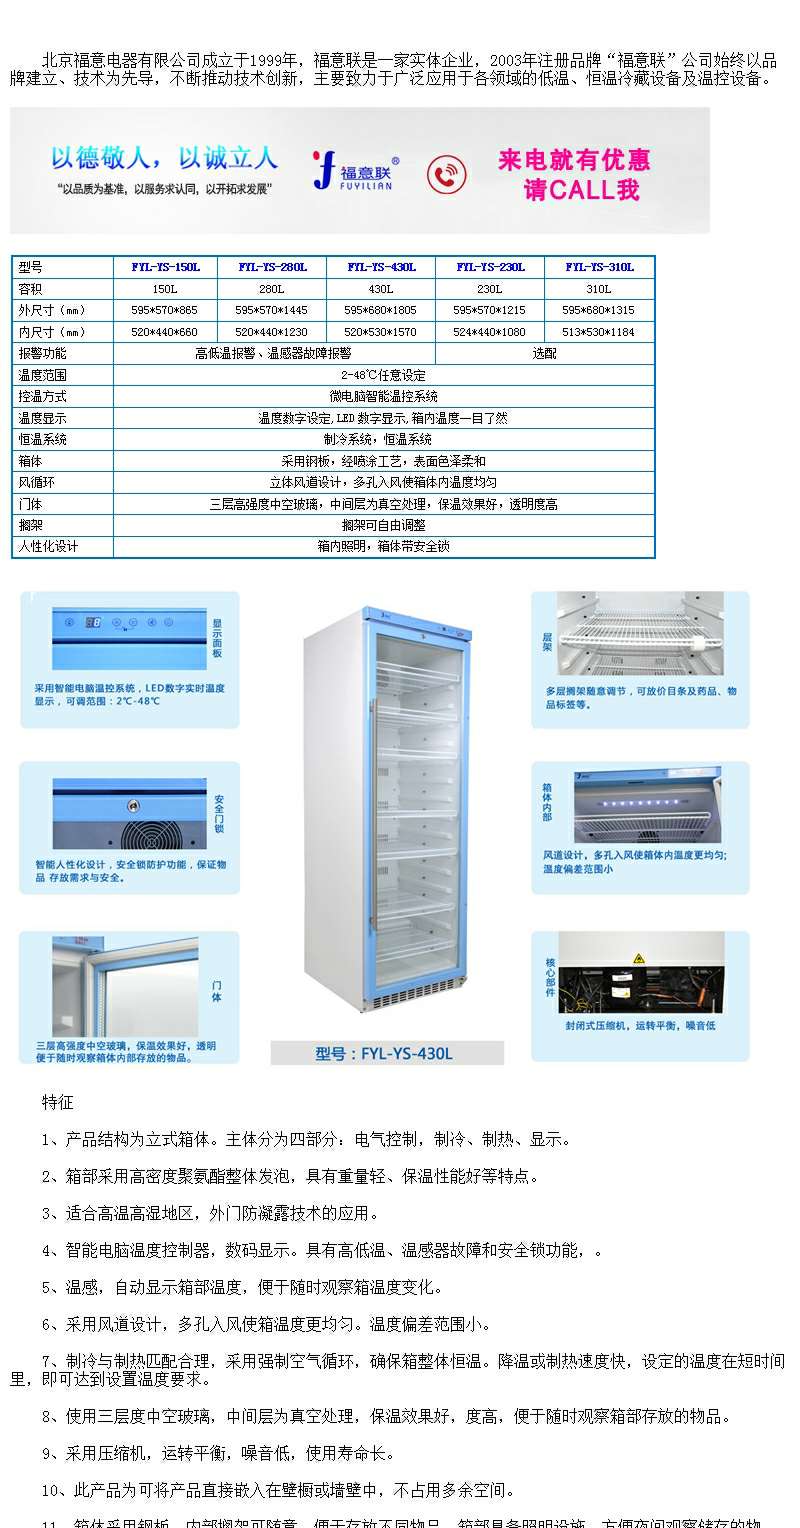 4度立式冷藏柜双人双锁冰箱带温度提醒高度一米多